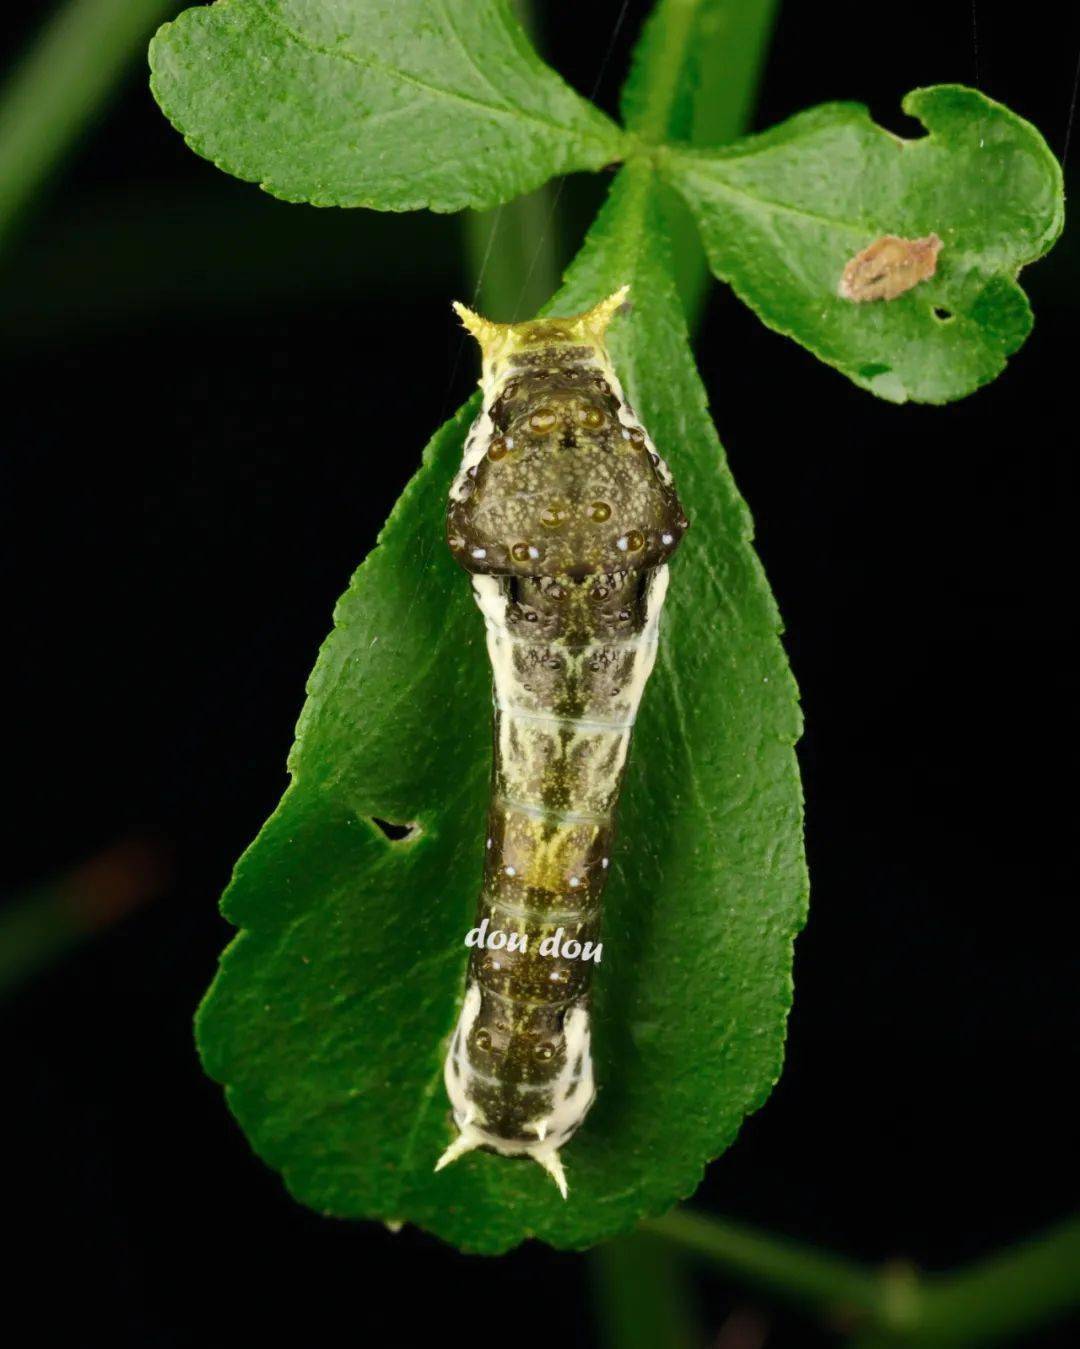 玉带凤蝶 papilio polytes linnaeus, 1758 ,幼虫尾部两侧白色花纹在